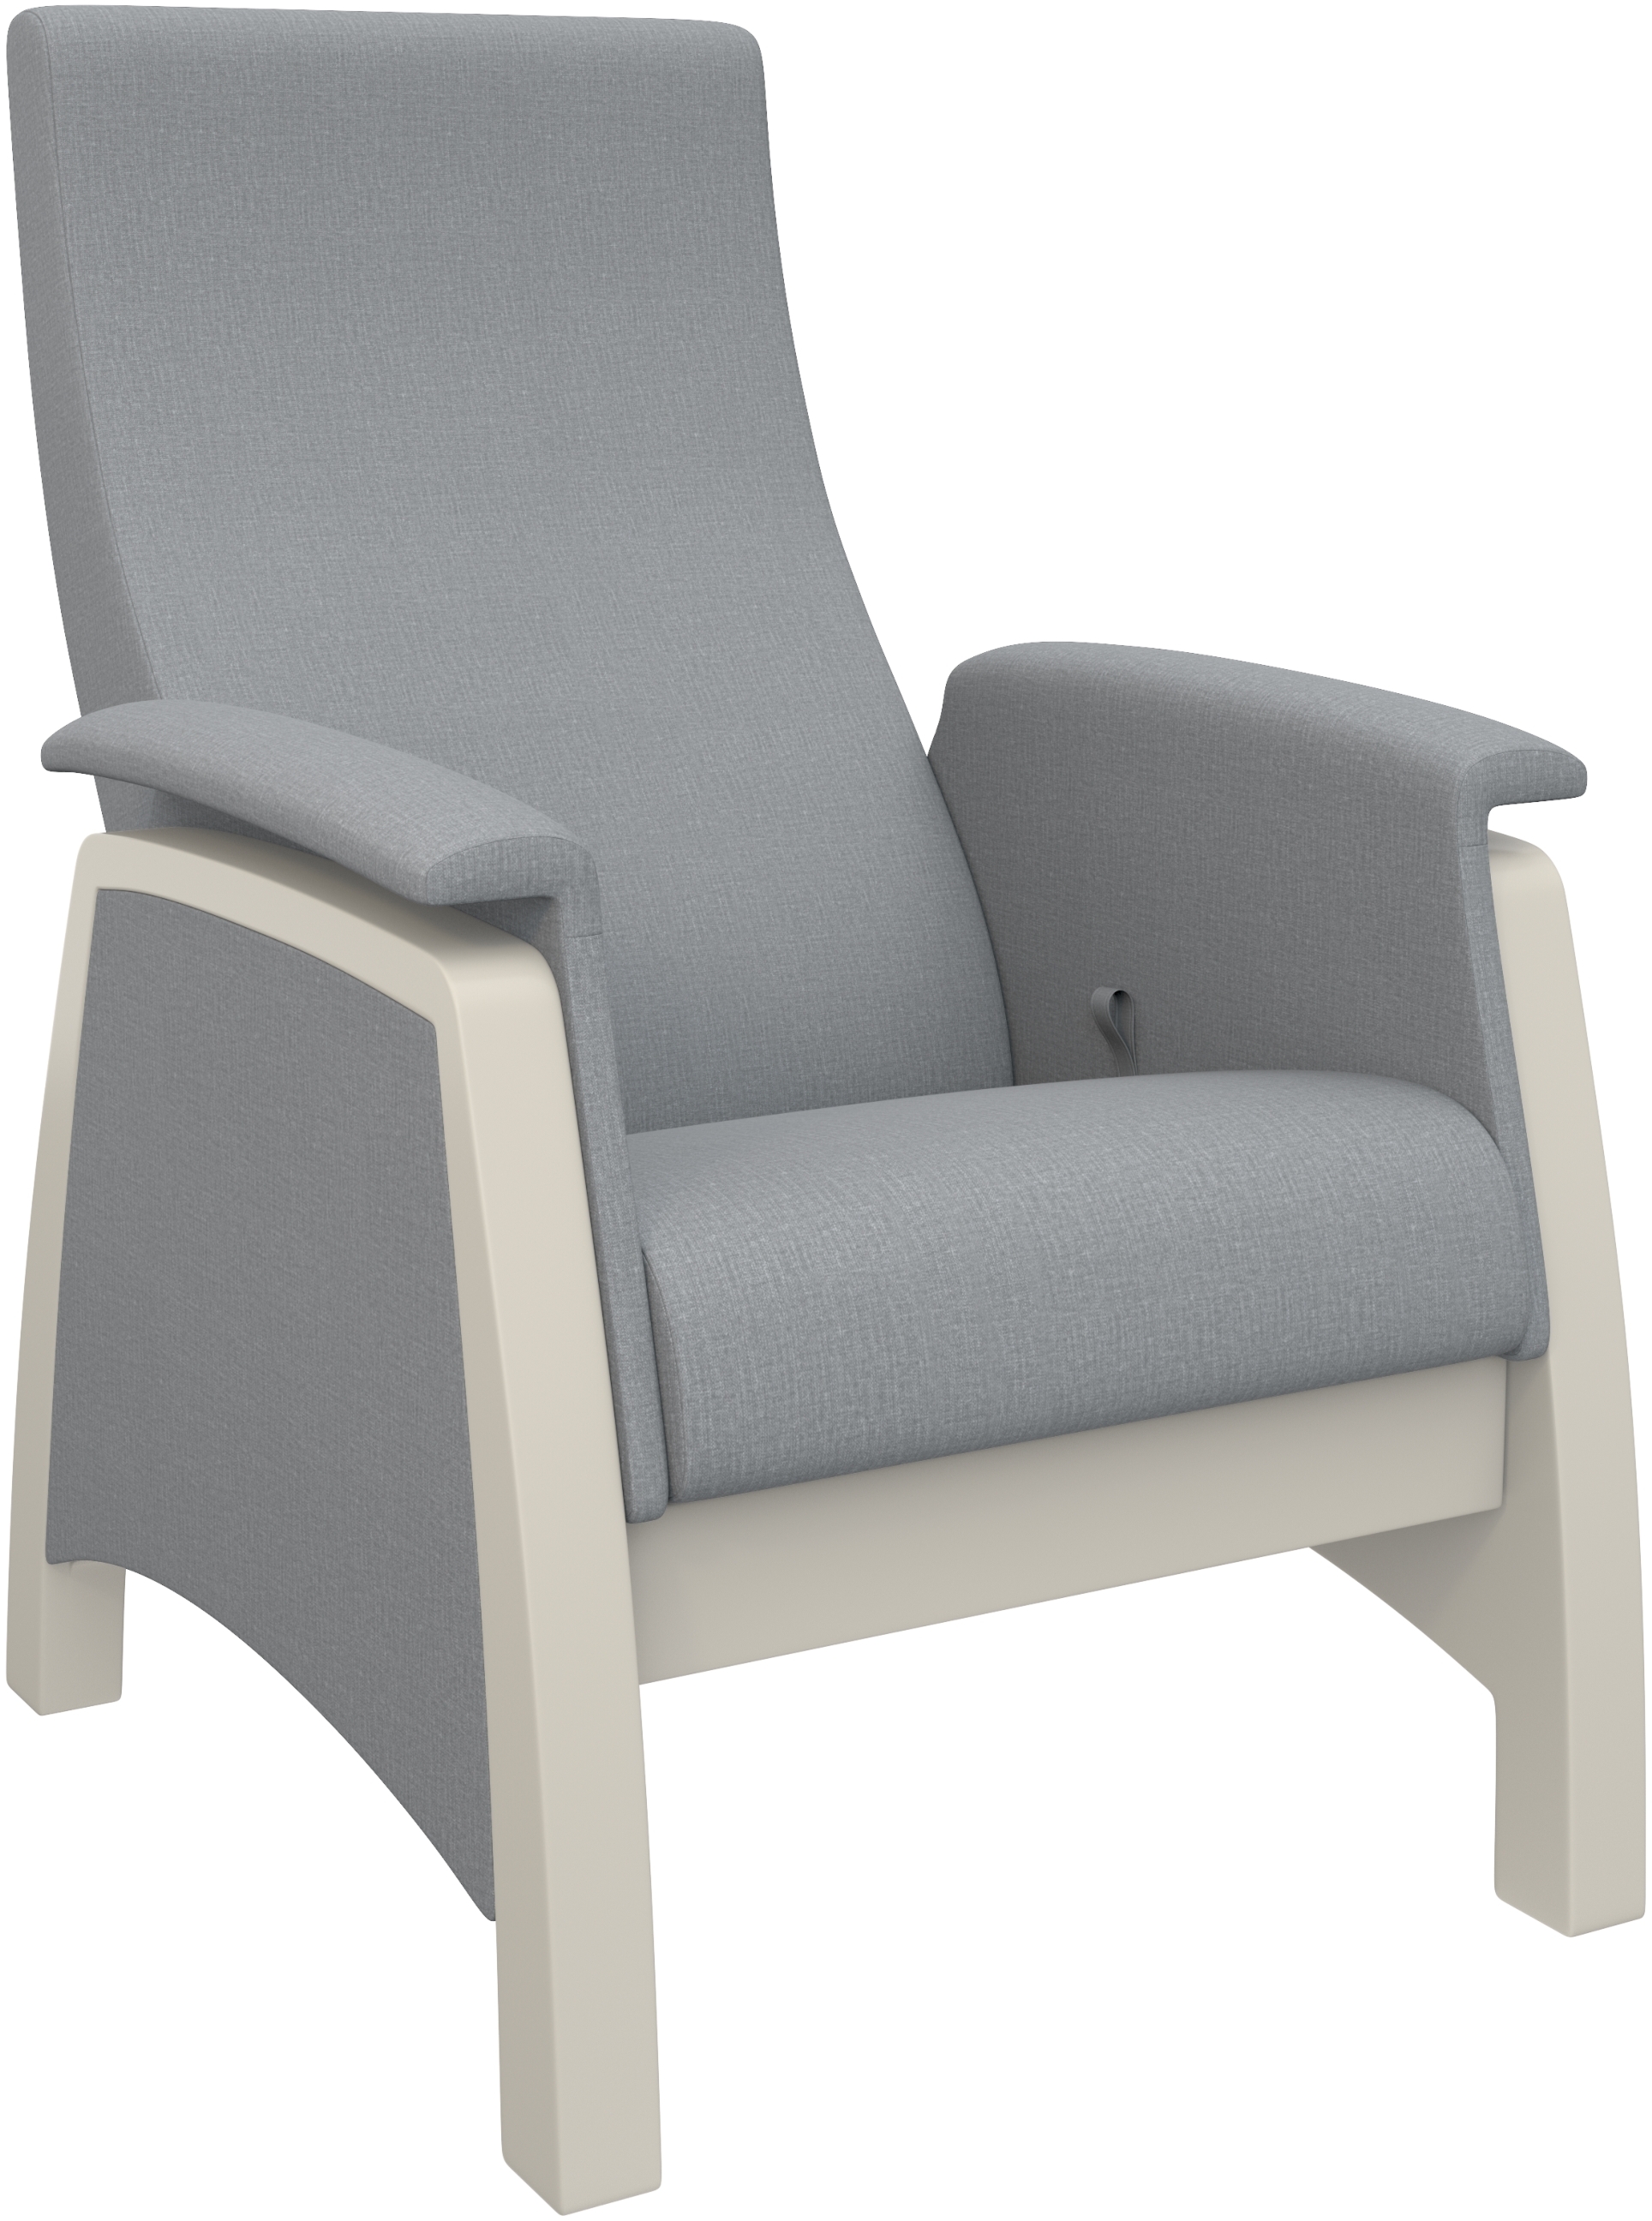 Кресло-качалка глайдер модель 101 с откидной спинкой фото 1